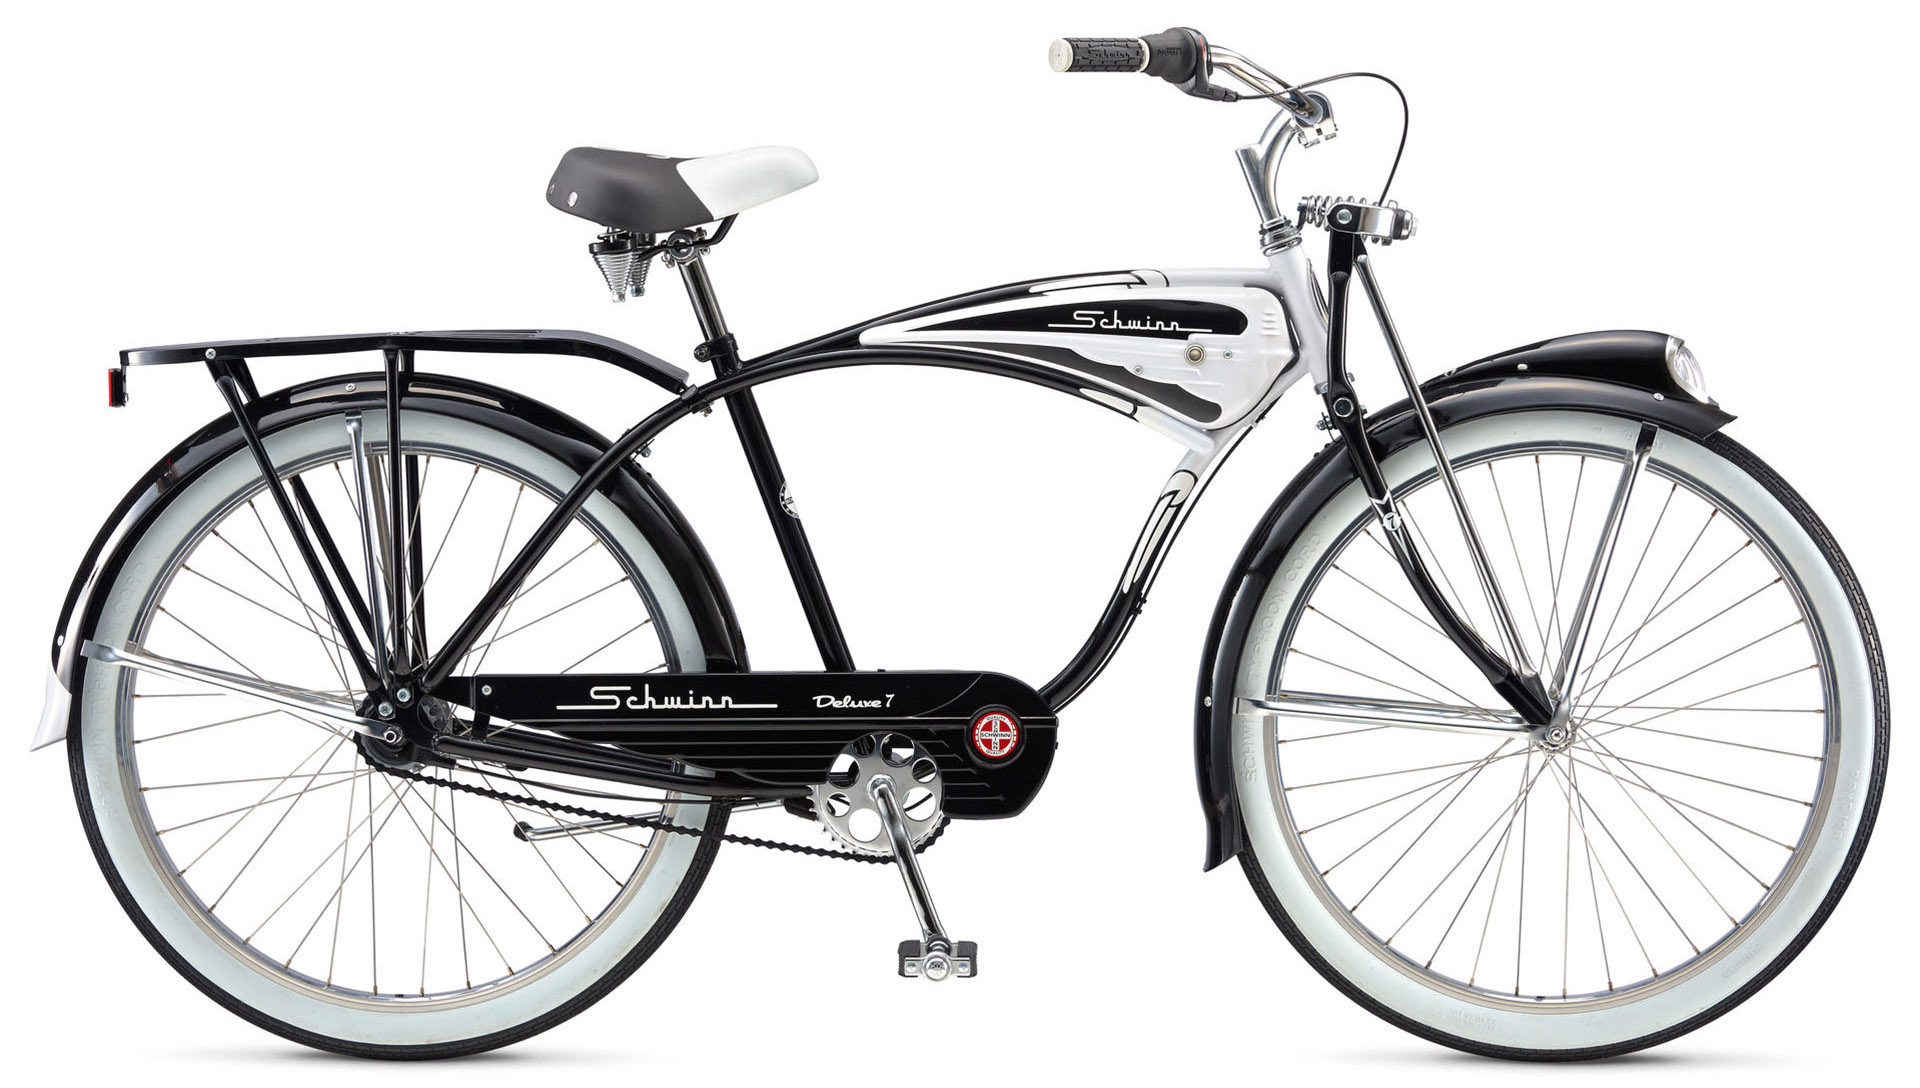  Велосипед Schwinn Classic Deluxe 2020